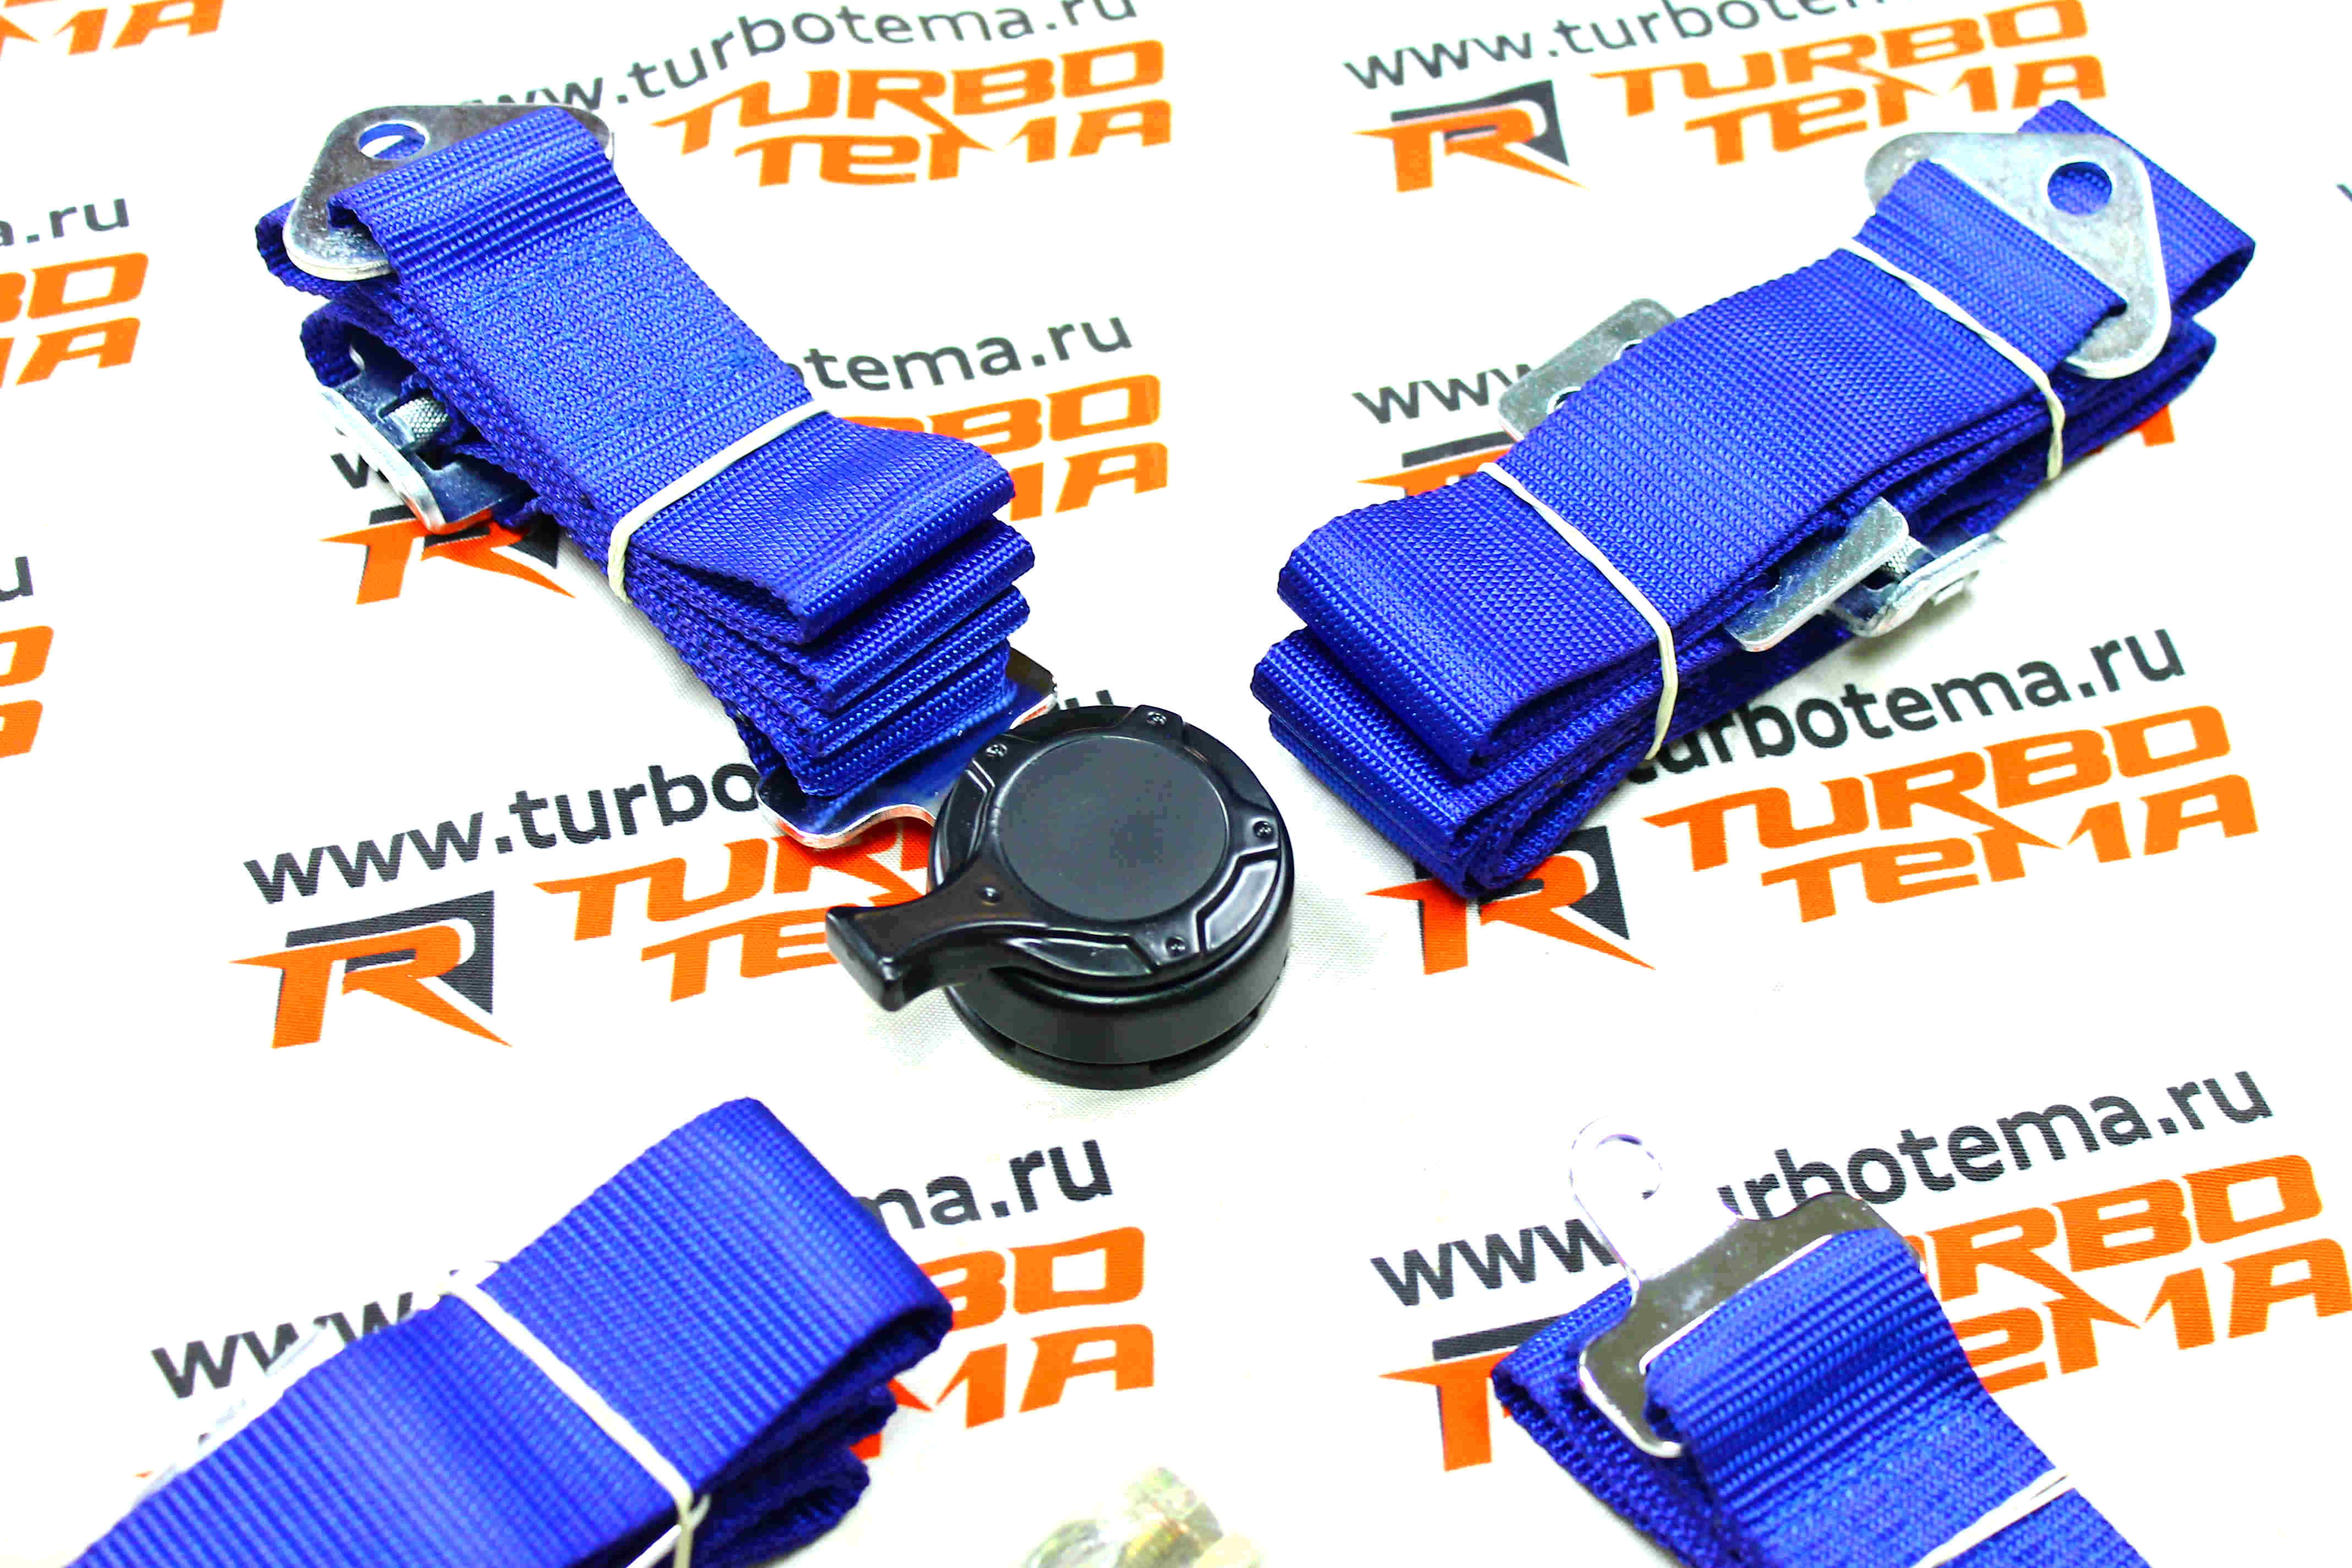 Ремни безопасности "TURBOTEMA" 4-х точечные, 2" ширина, быстросъемные (синие) JBR4001-4. Фото �3